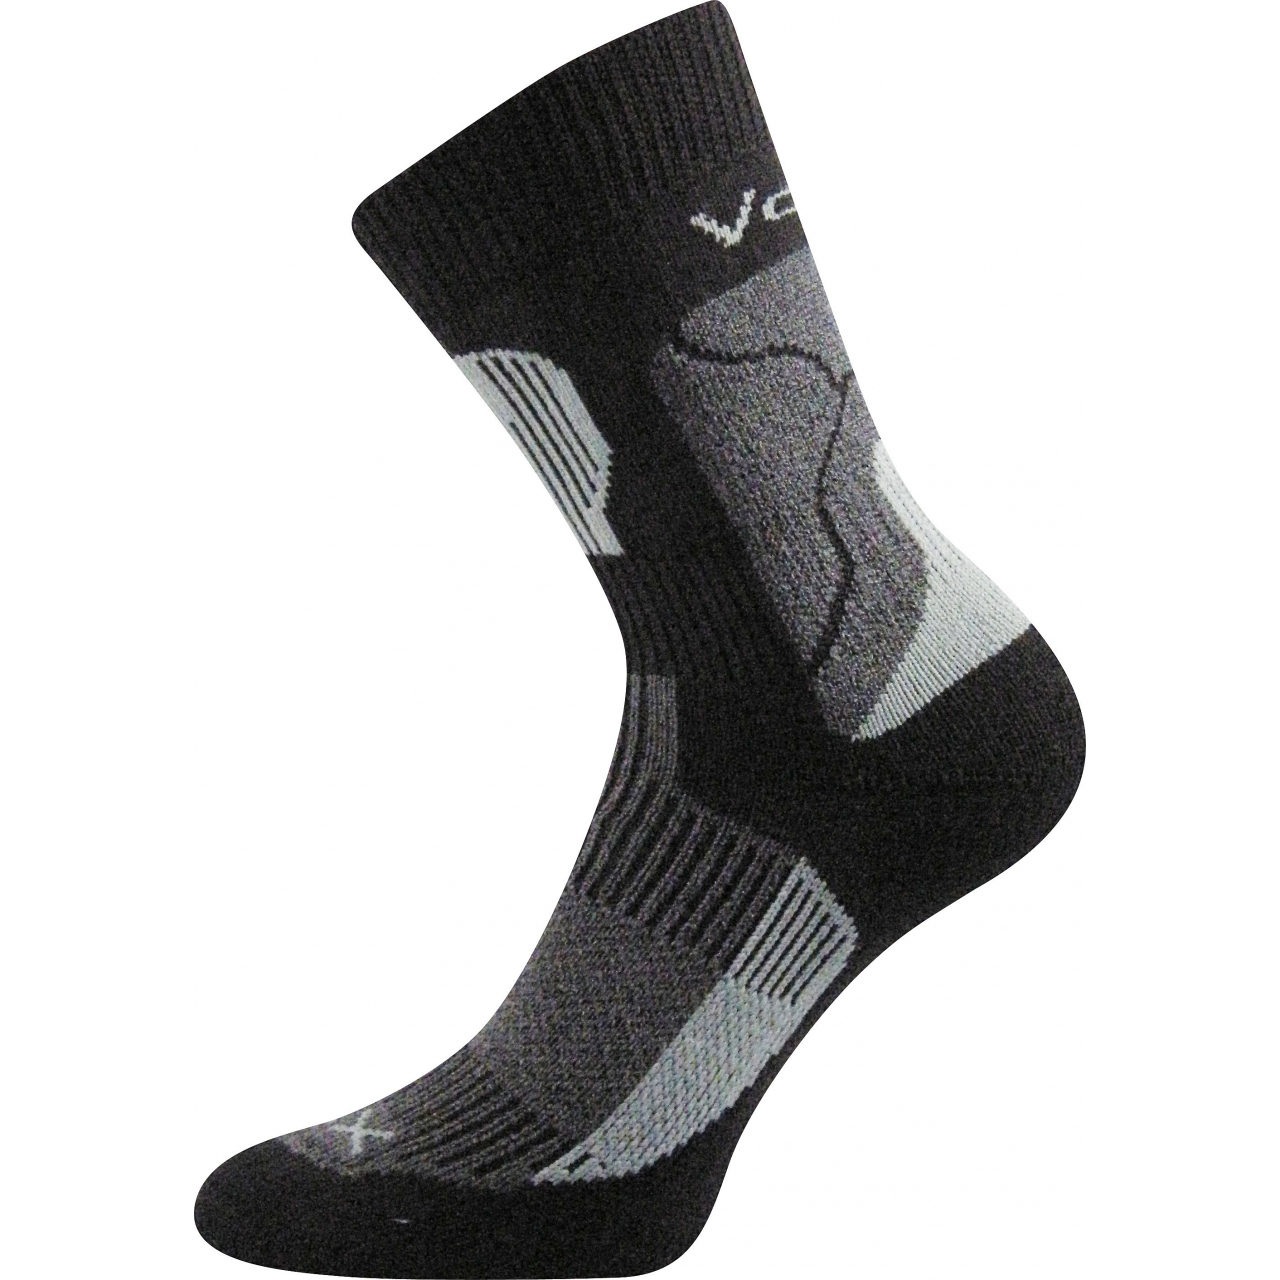 Ponožky unisex termo Voxx Treking - černé-šedé, 43-45